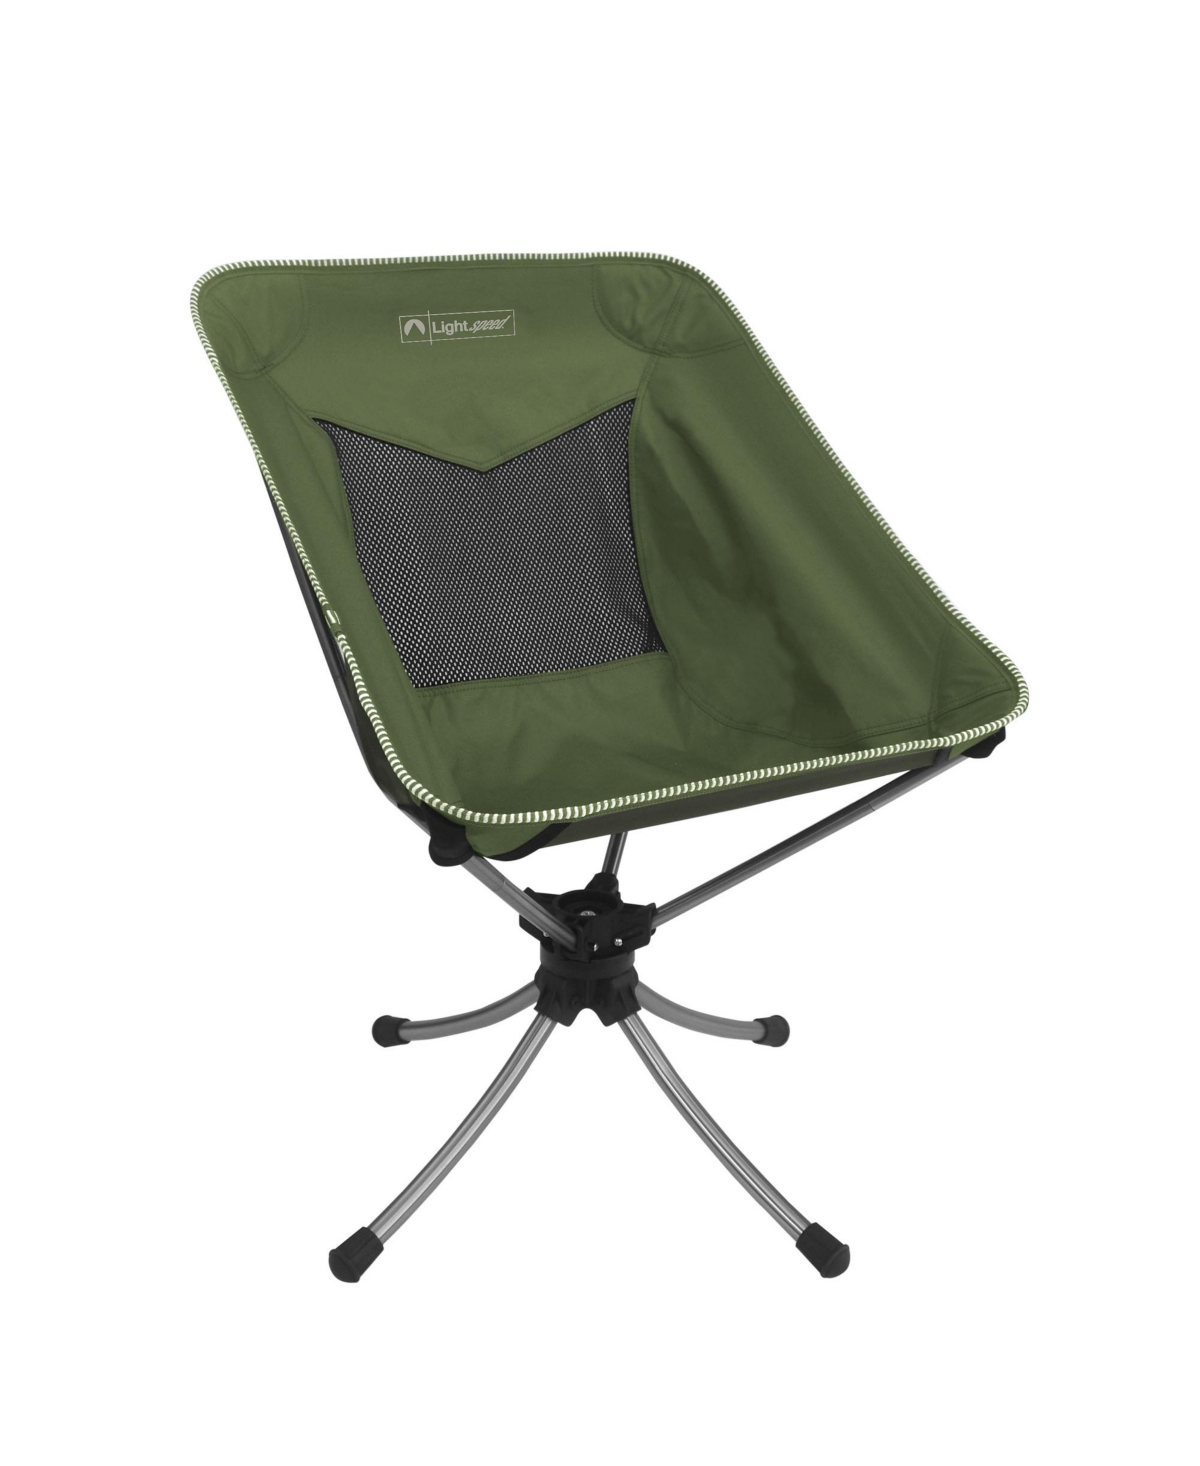 Lightspeed Outdoors Short Swivel Camp Chair, Green - Green